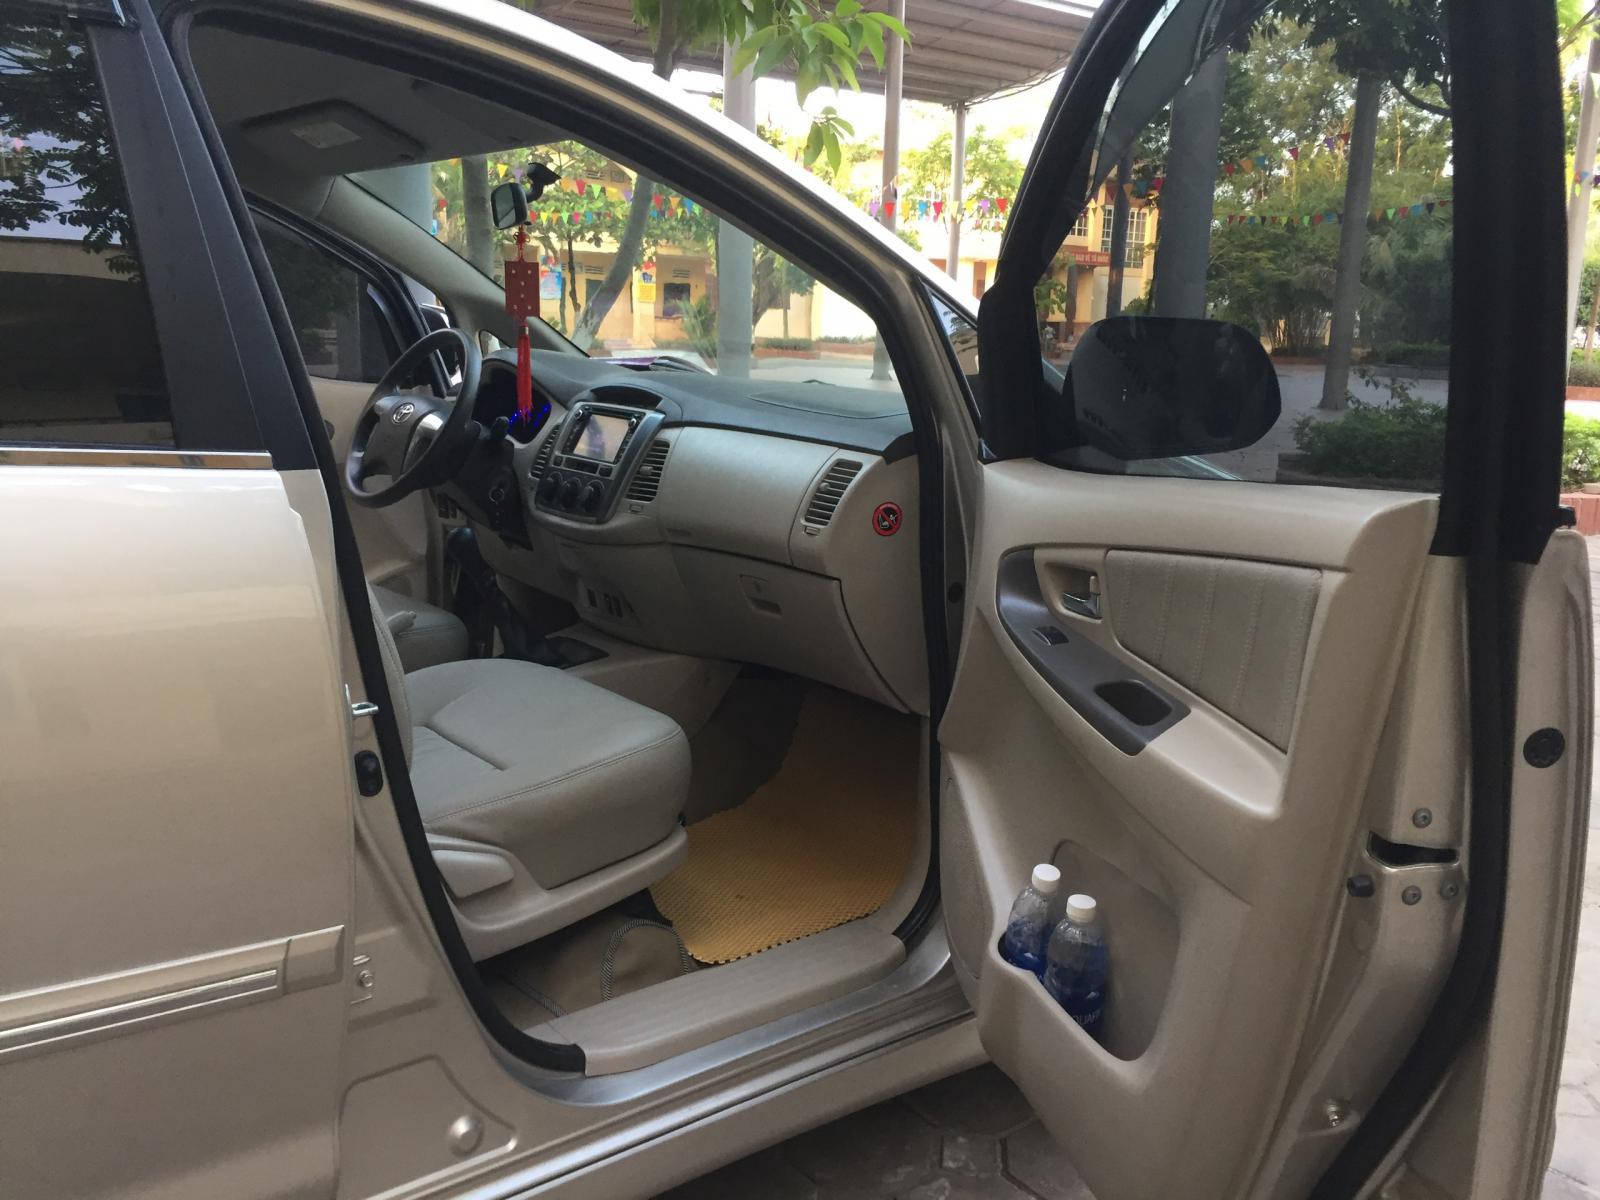 Gia đình cần bán chiếc xe ô tô Toyota Innova 2.0E sx 2016, xe tư nhân chính chủ gia đình sử dụng giữ gìn rất cẩn thận